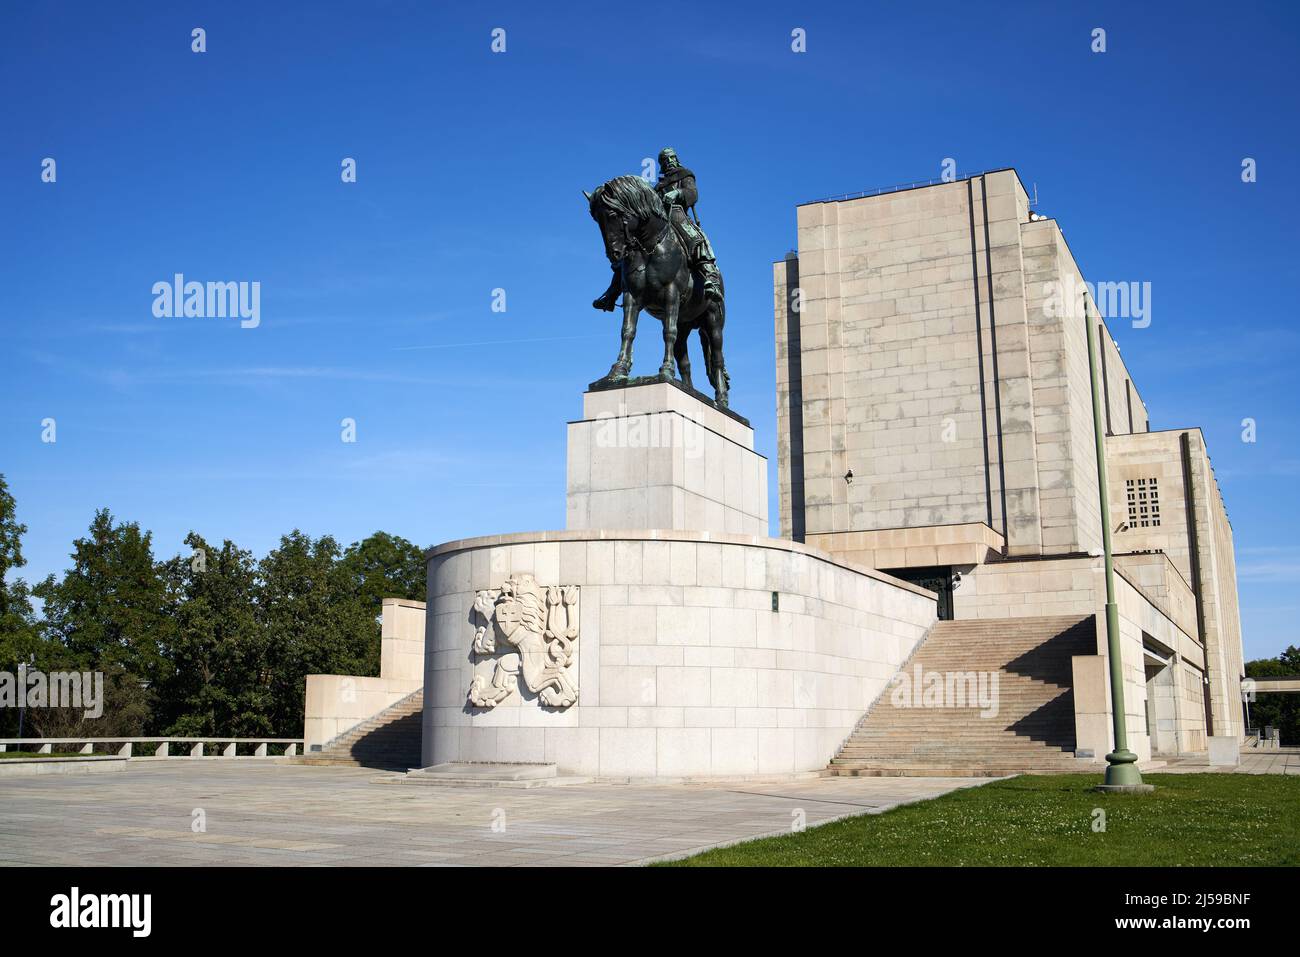 PRAG, TSCHECHISCHE REPUBLIK - 1. OKTOBER 2021: Denkmal des hussitischen Führers Jan Zizka mit einer bronzenen Reiterstatue Stockfoto